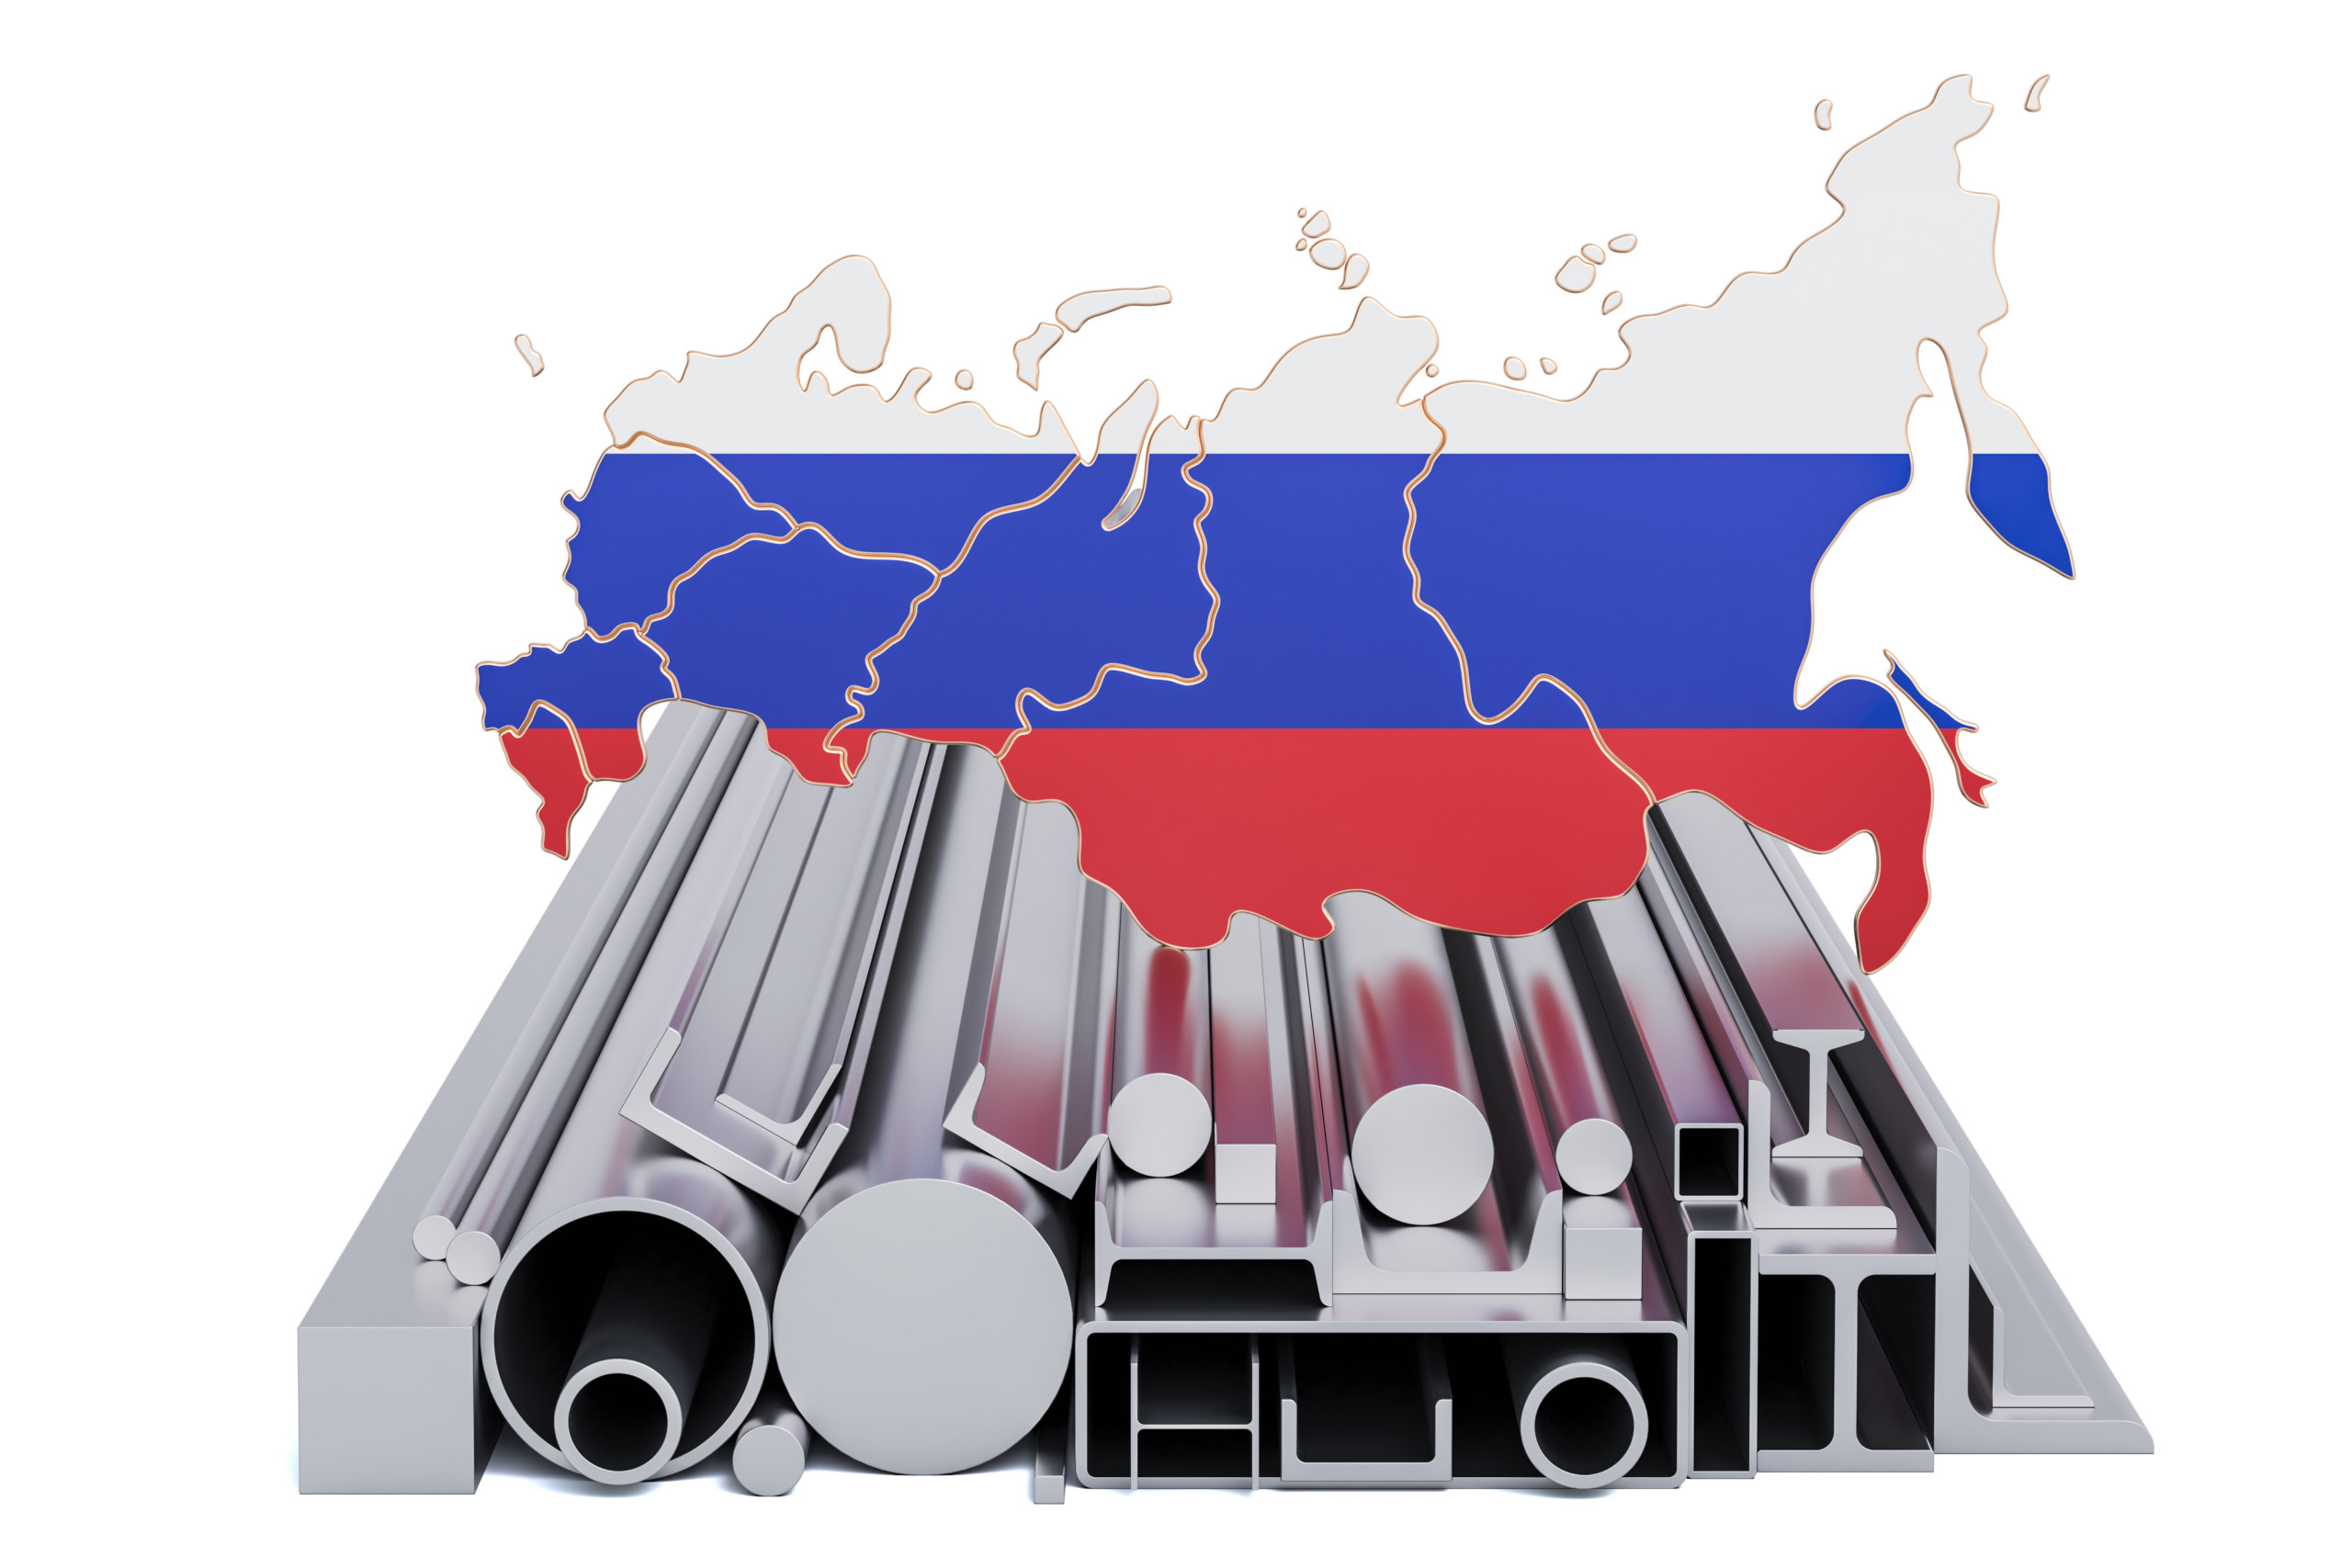 Russland ist mit 7% weltweit der sechstgrößte Hersteller von Stahl. Wie spielt der Stahlmarkt die aktuelle Lage?